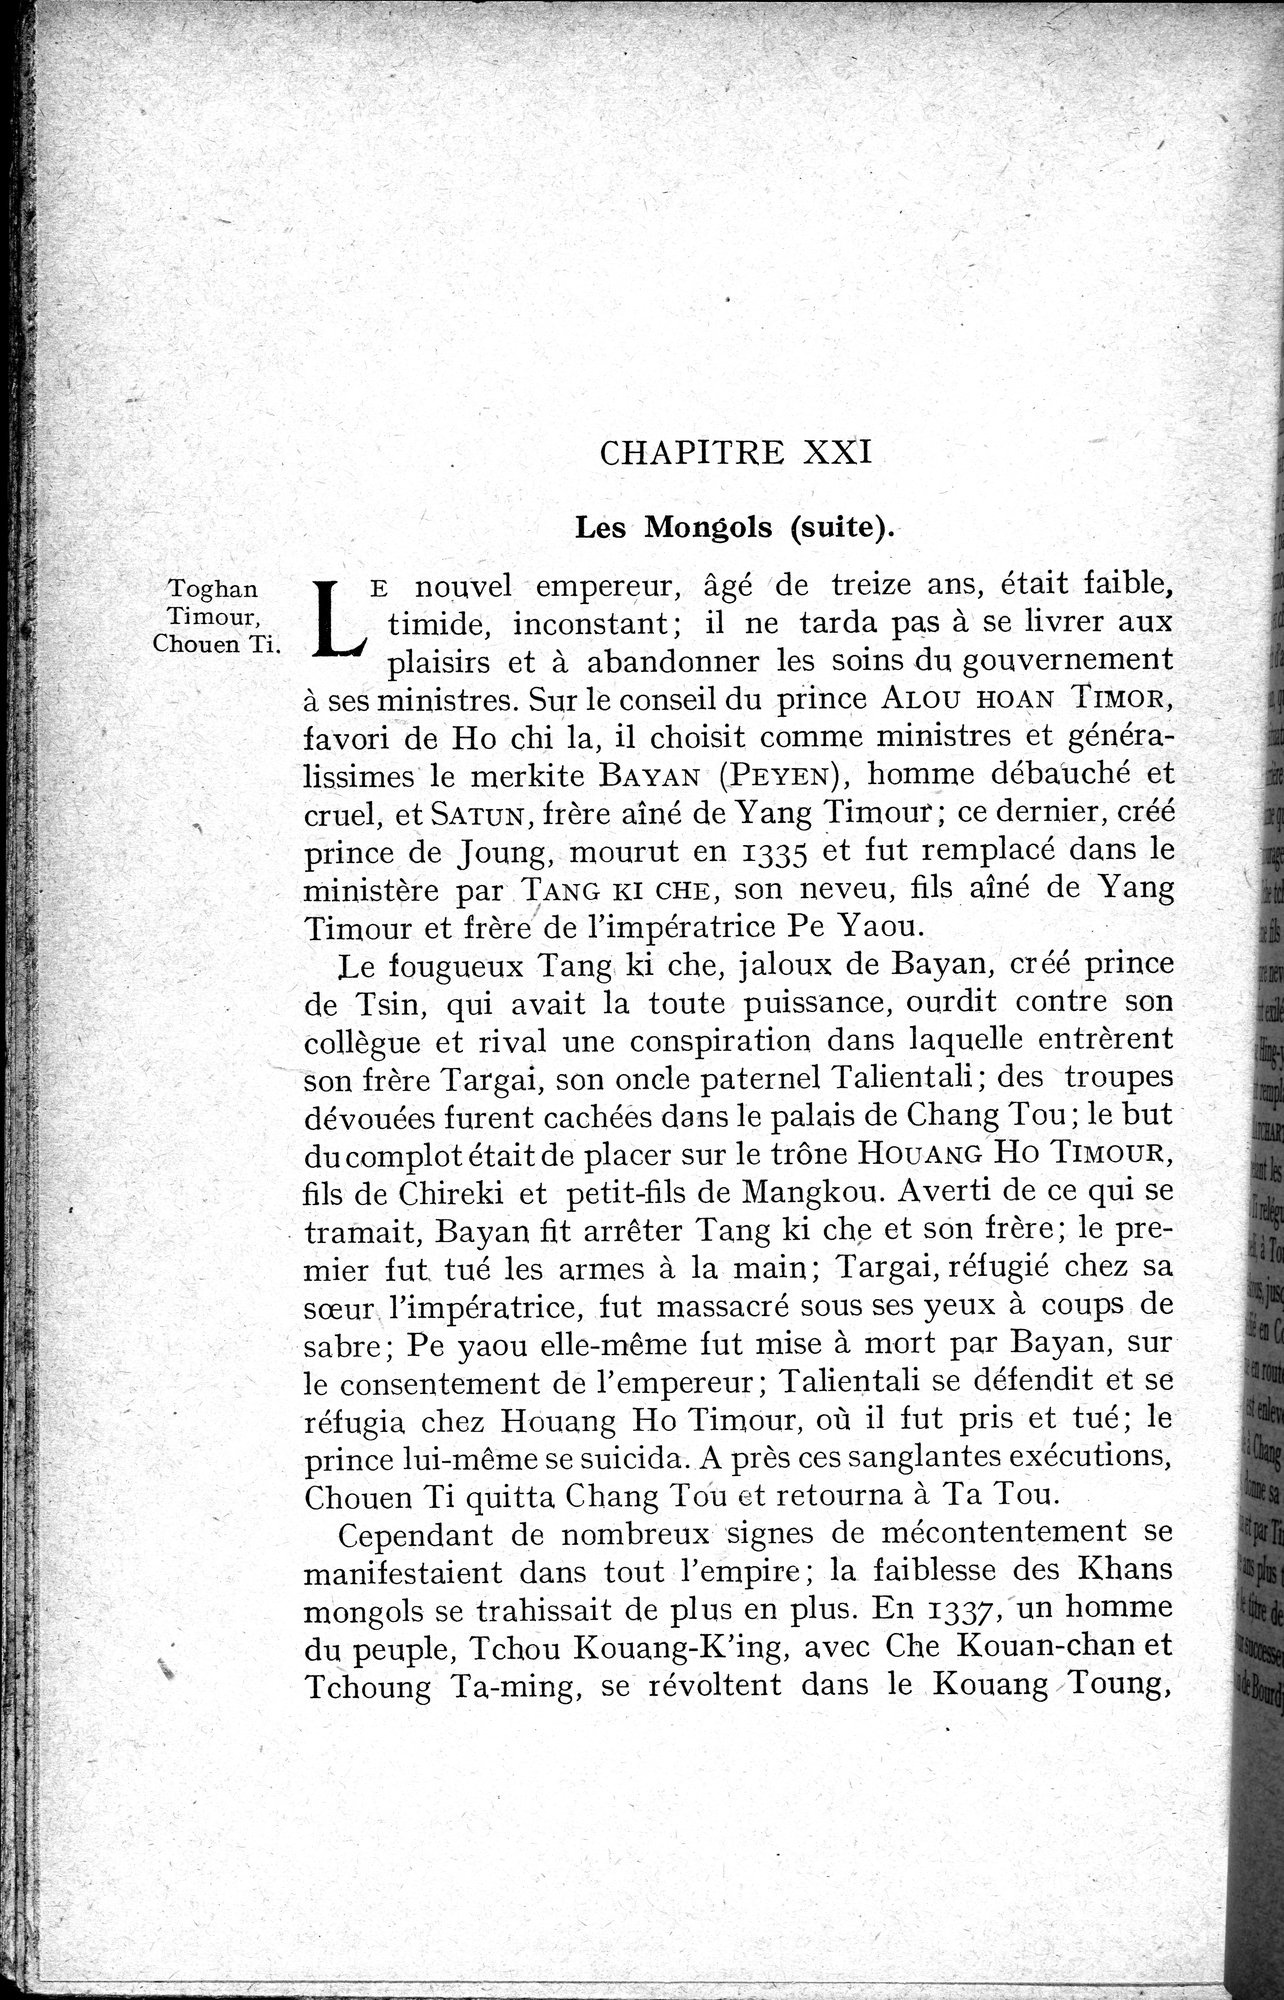 Histoire Générale de la Chine : vol.2 / Page 352 (Grayscale High Resolution Image)